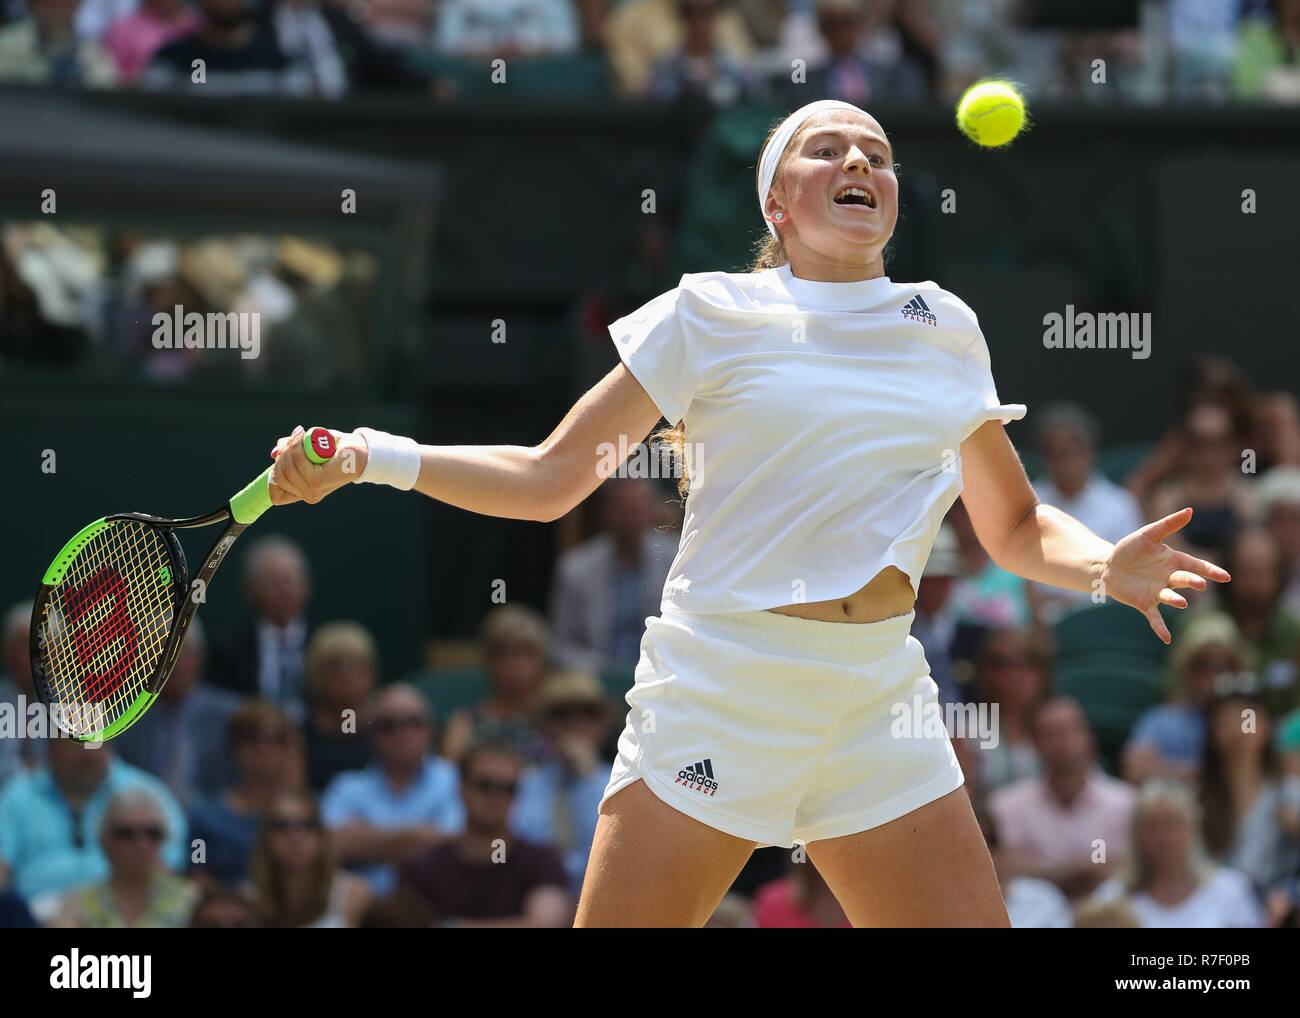 Jugador Letón Jelena Ostapenko en acción en Wimbledon, Londres, Reino Unido. Foto de stock